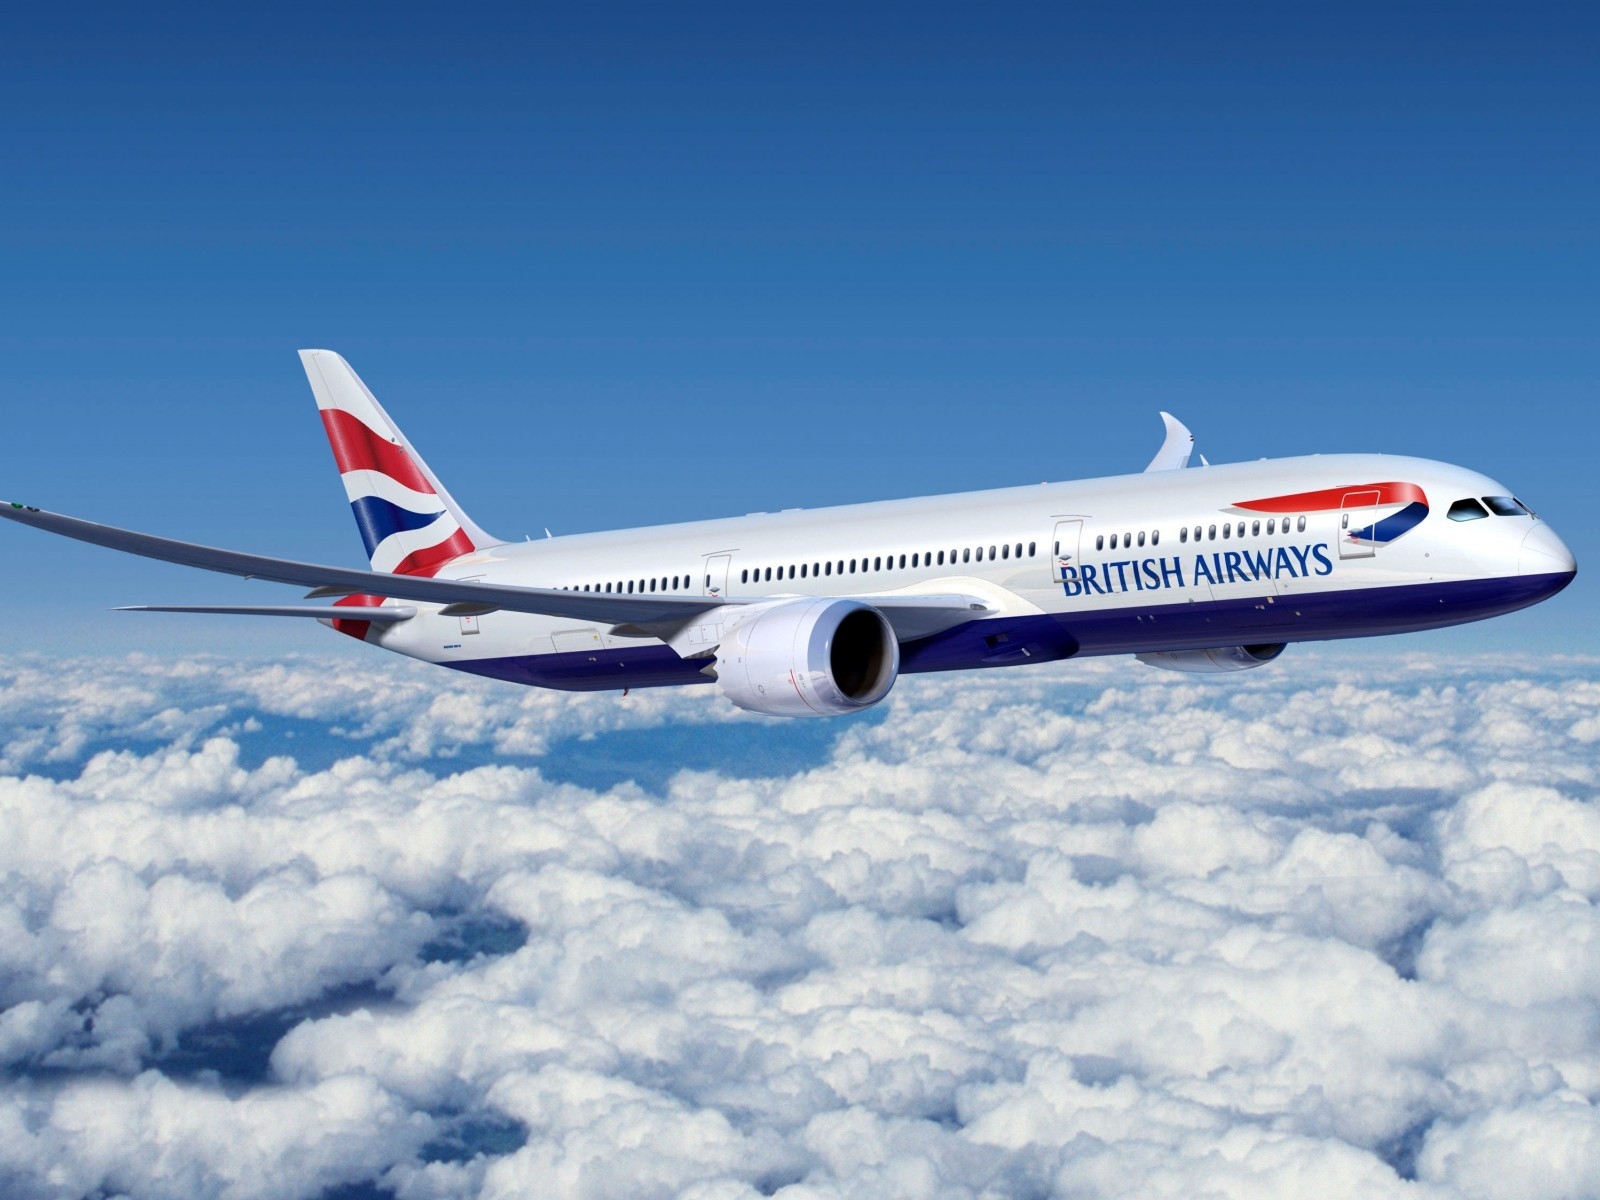 Boeing 777 British Airways for 1600 x 1200 resolution